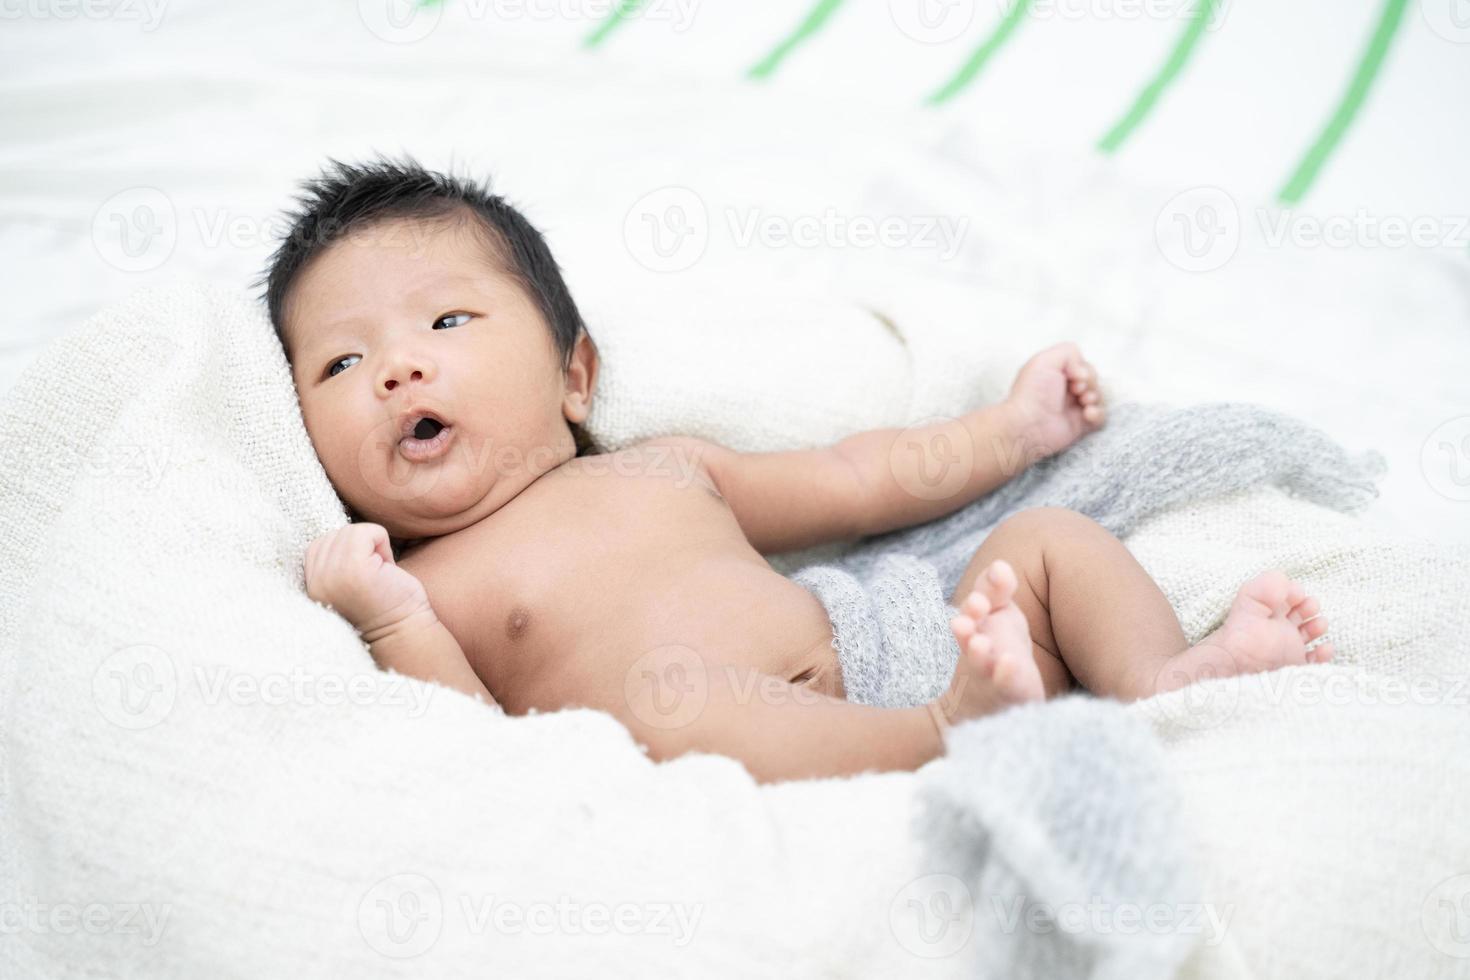 nyfött spädbarn behandla som ett barn pojken som ligger på en vit filt foto